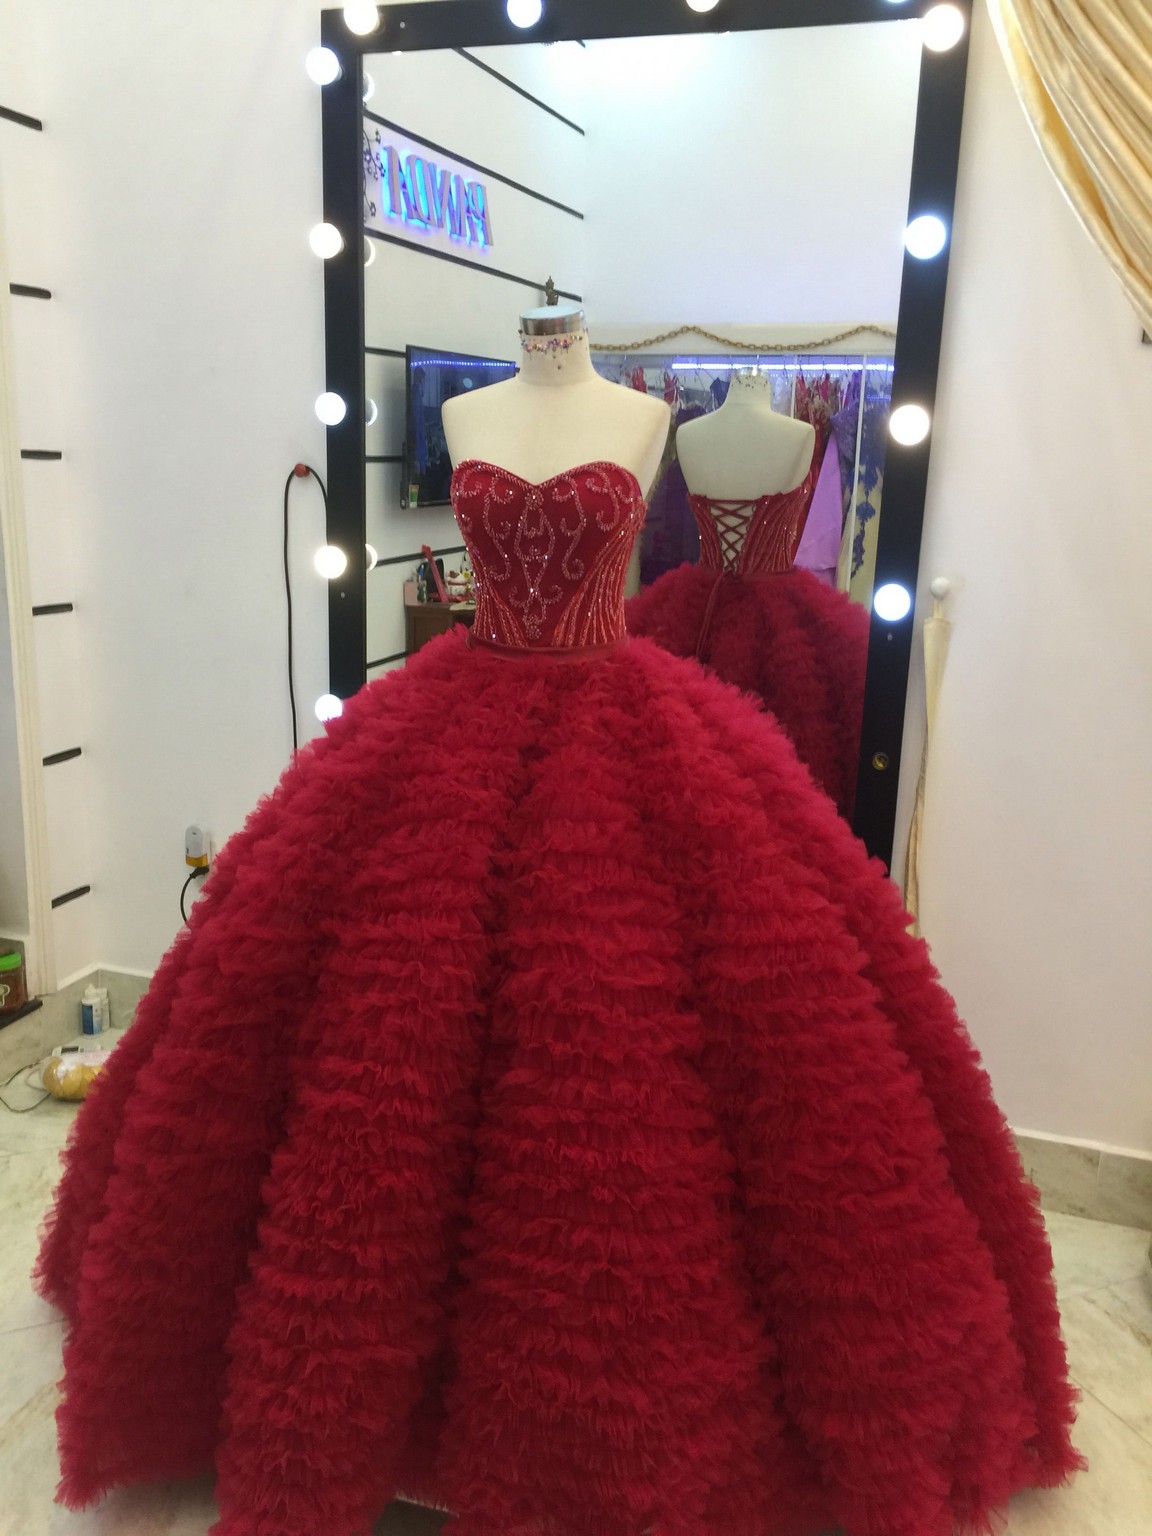 Top 10 mẫu đầm cô dâu đơn giản đẹp theo xu hướng 2023  NiNiStore 2023